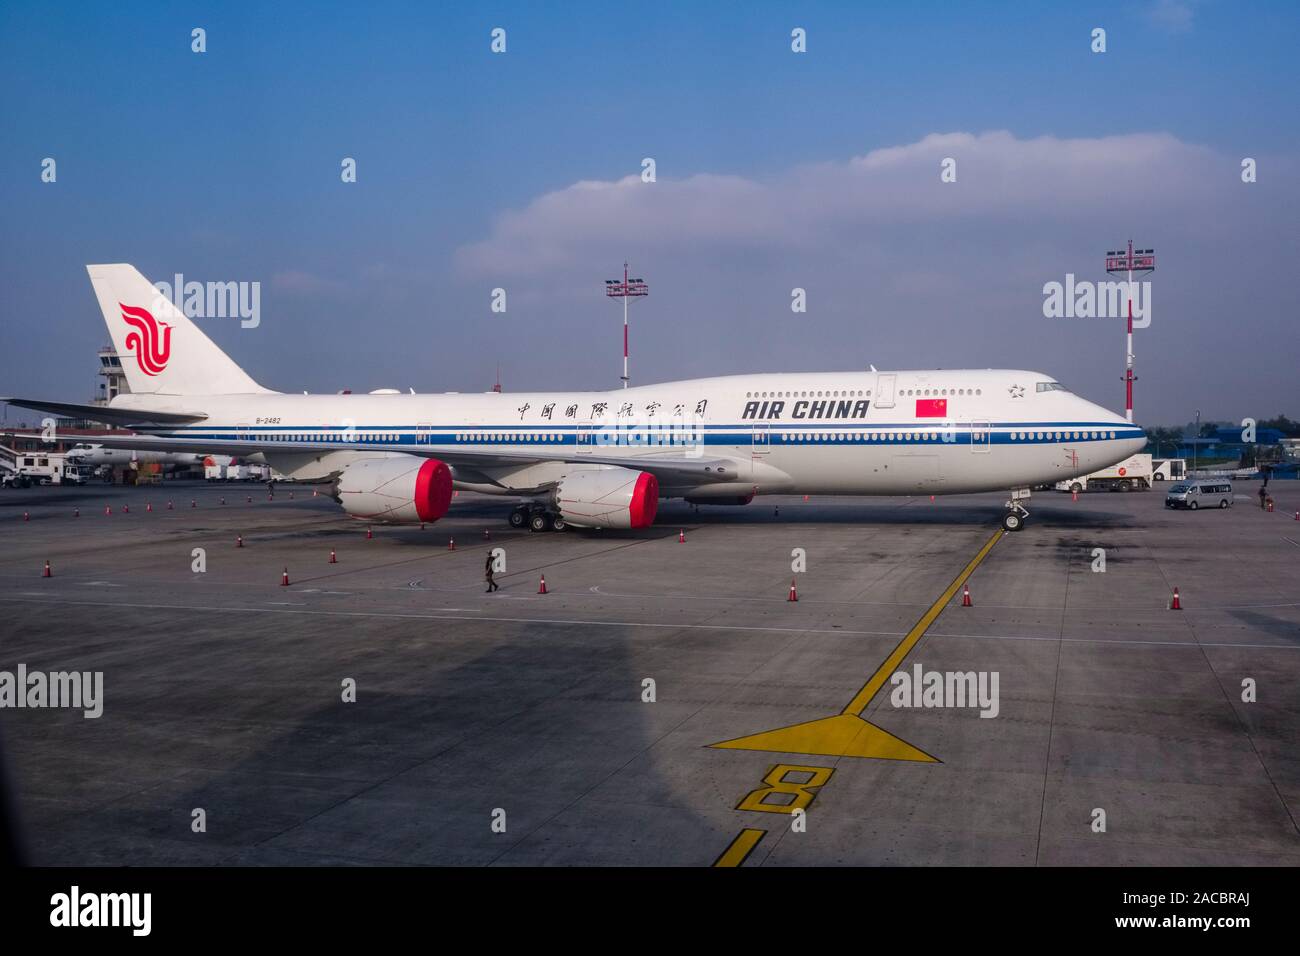 Le Boeing 747-400 du président chinois Xi Jinping, stationné à l'aéroport international de Tribhuvan durant sa visite Banque D'Images